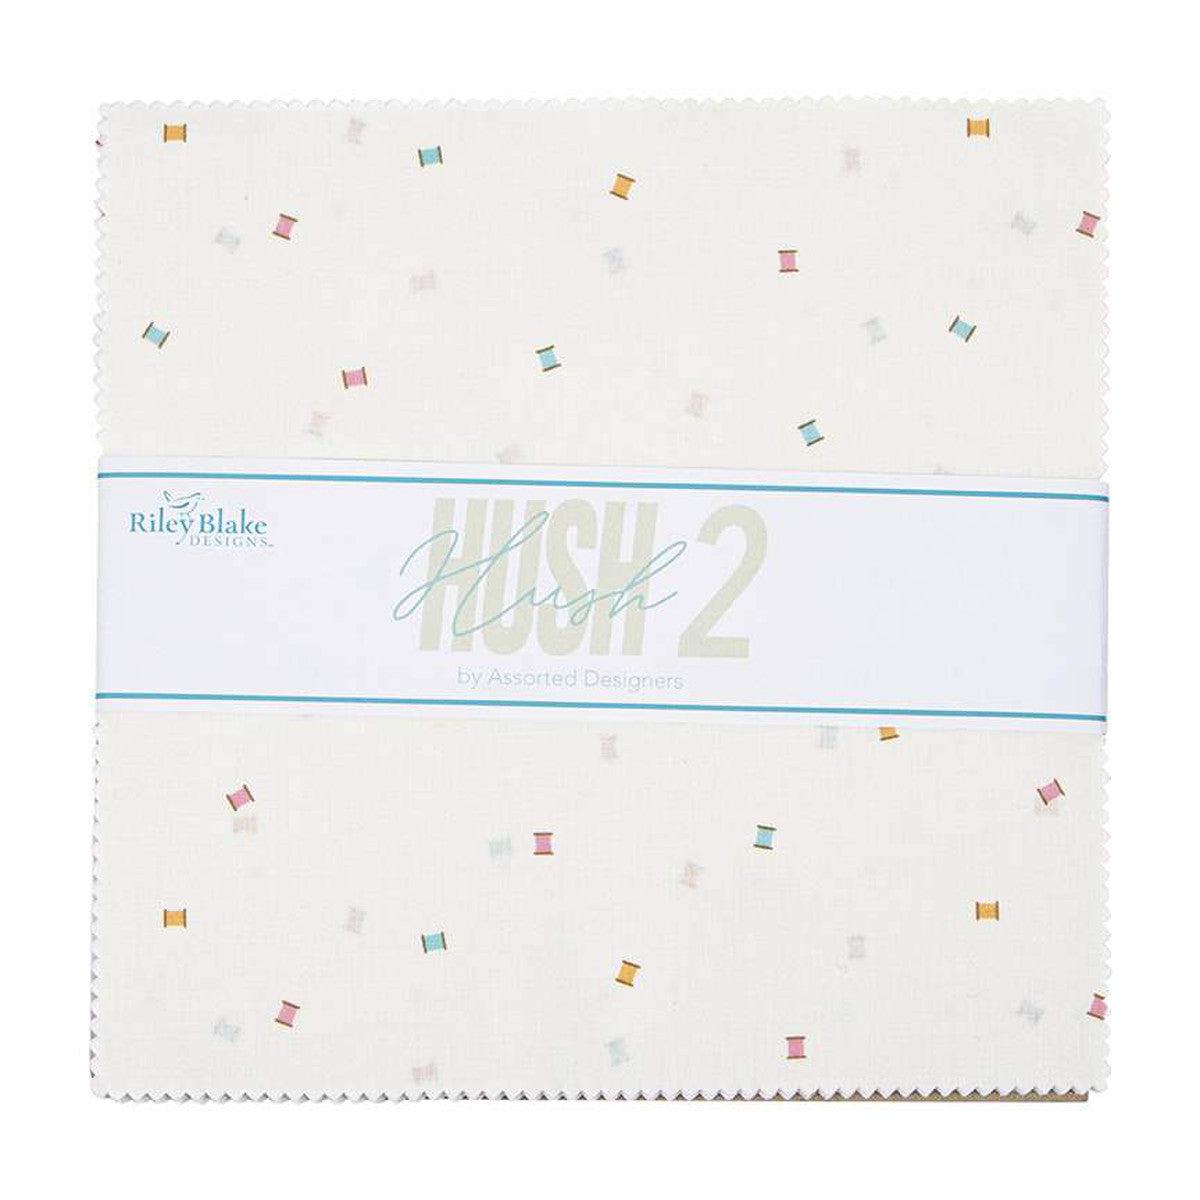 Hush Hush 2 10" Layer Cake-Riley Blake Fabrics-My Favorite Quilt Store